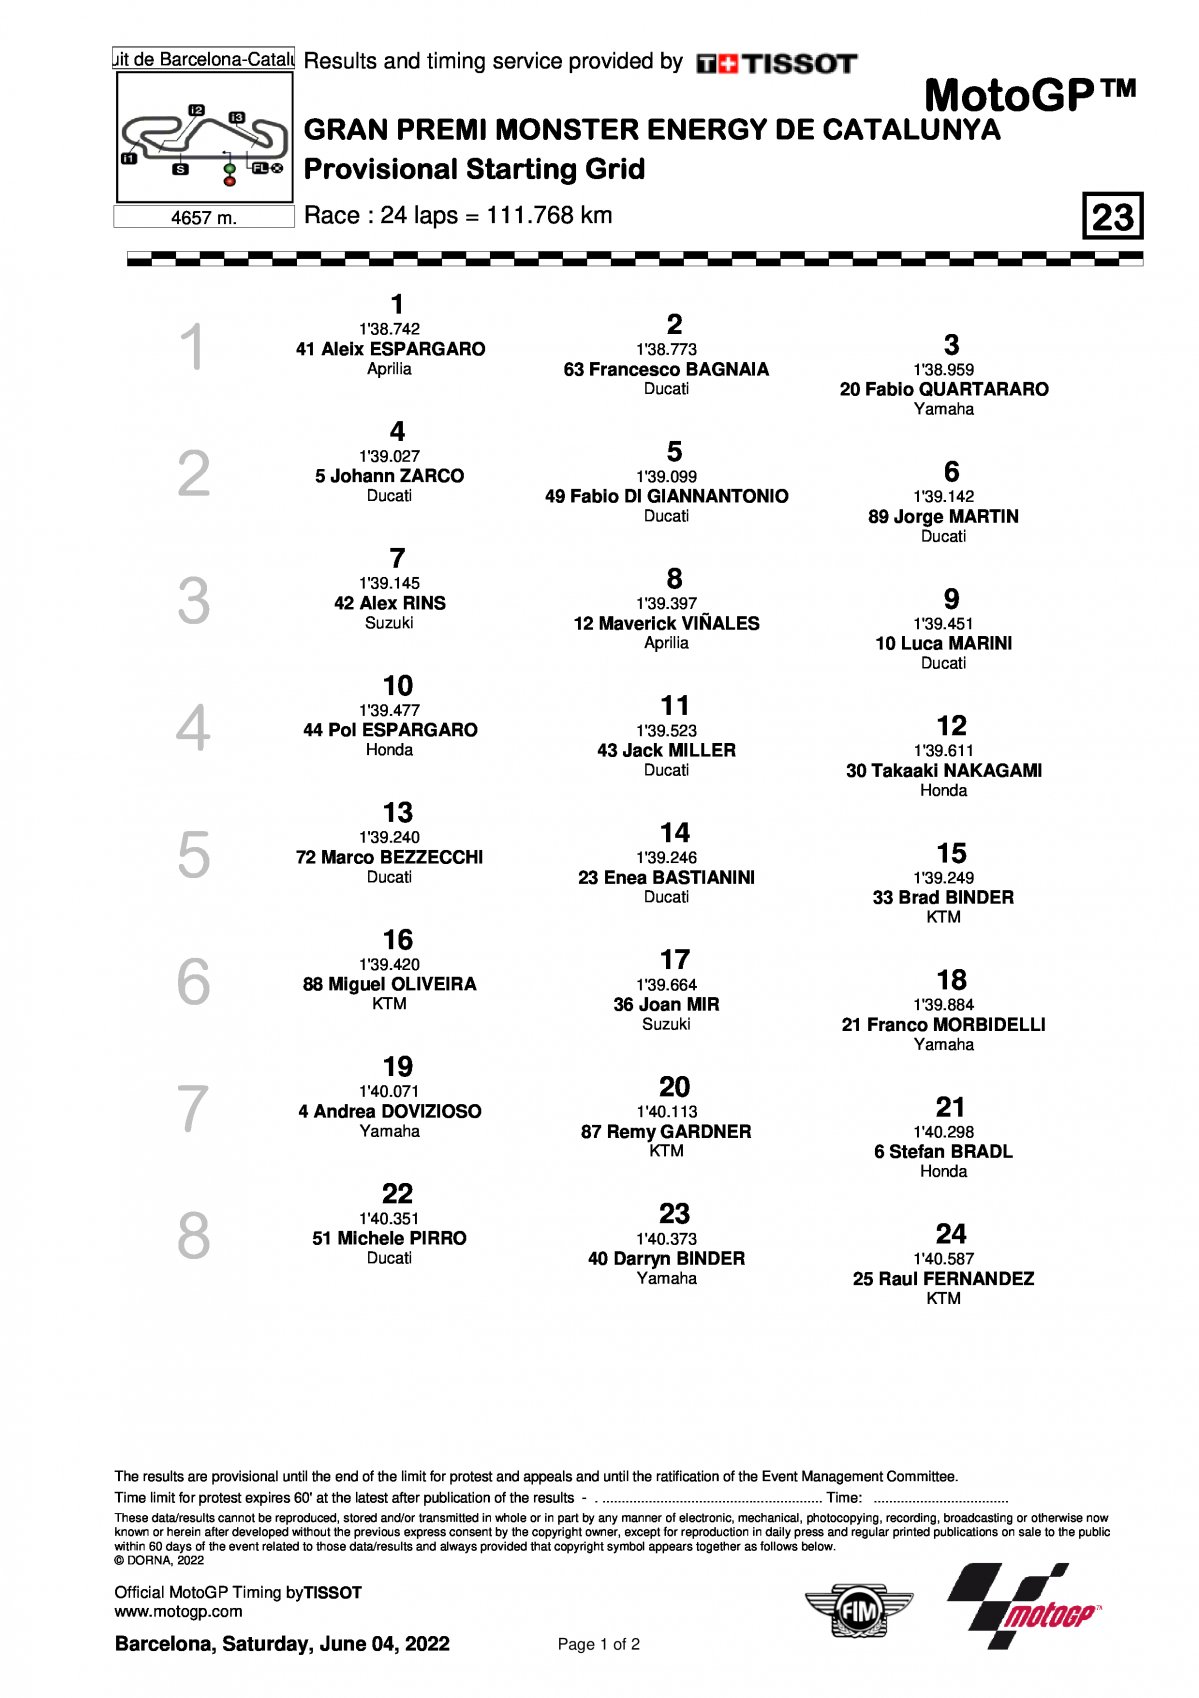 Стартовая решетка Гран-При Каталонии MotoGP (5/06/2022)